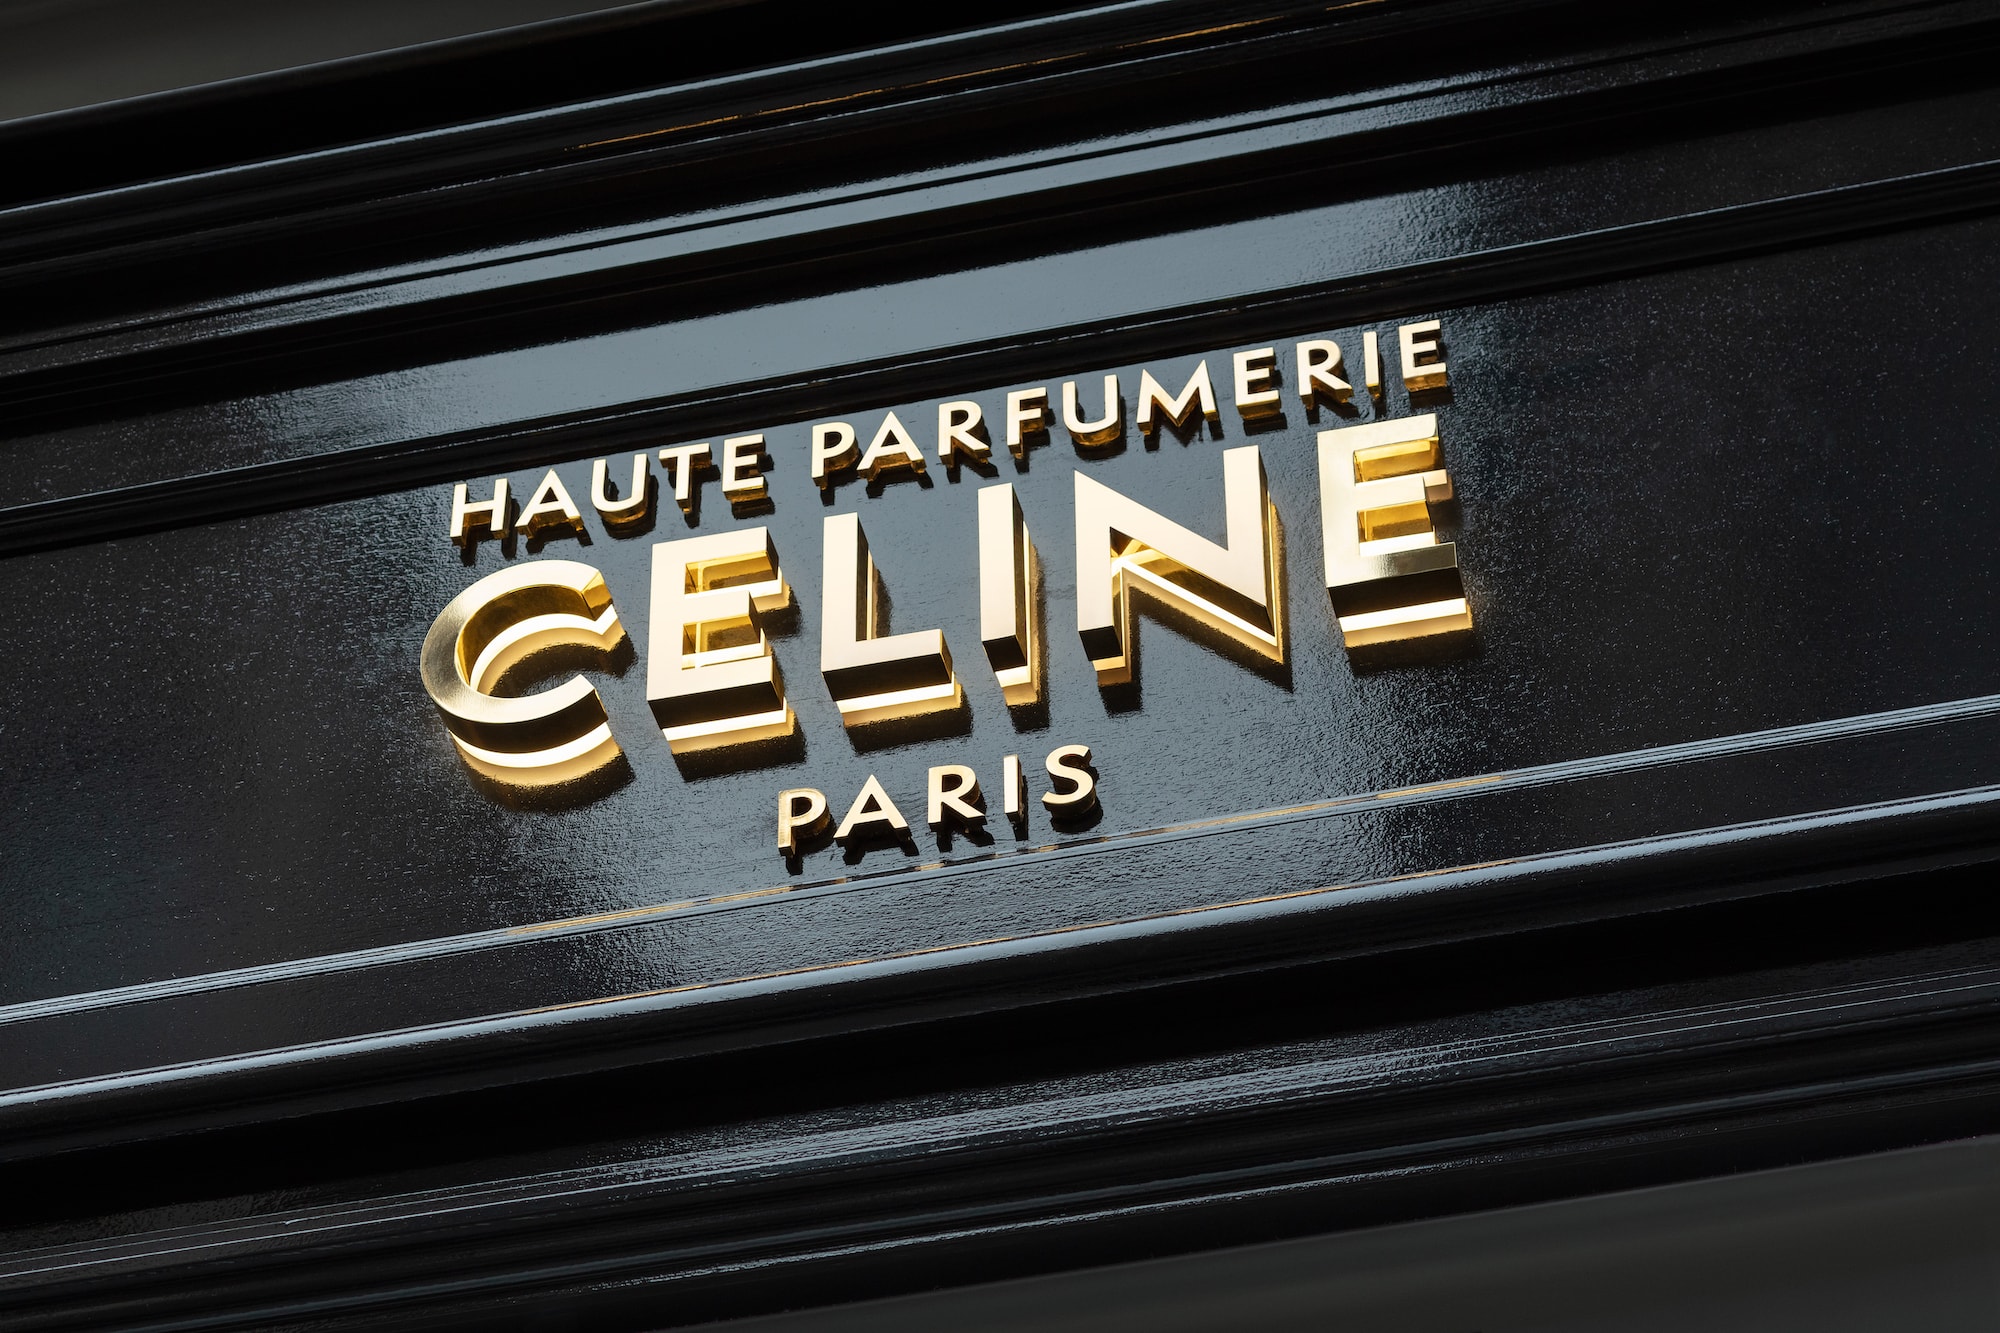 CELINE Haute Parfumerie Paris Fragrance Boutique Perfume Store Shop First Look Interior